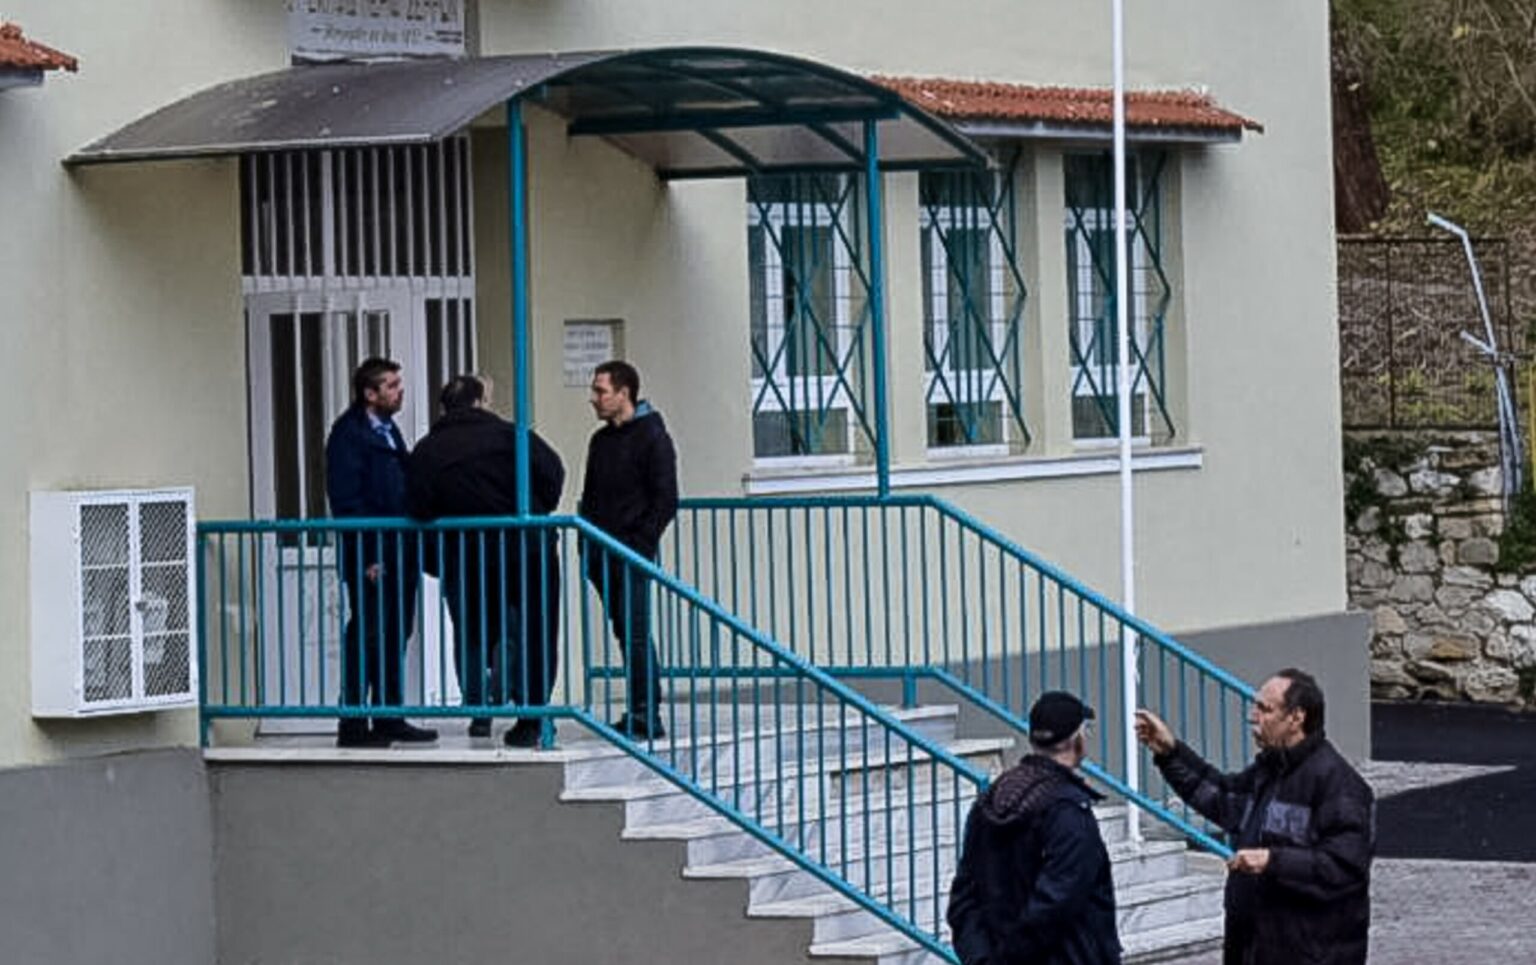 Έκρηξη στις Σέρρες: Ελεύθεροι με προφορική εντολή εισαγγελέα αφέθηκαν οι δύο συλληφθέντες